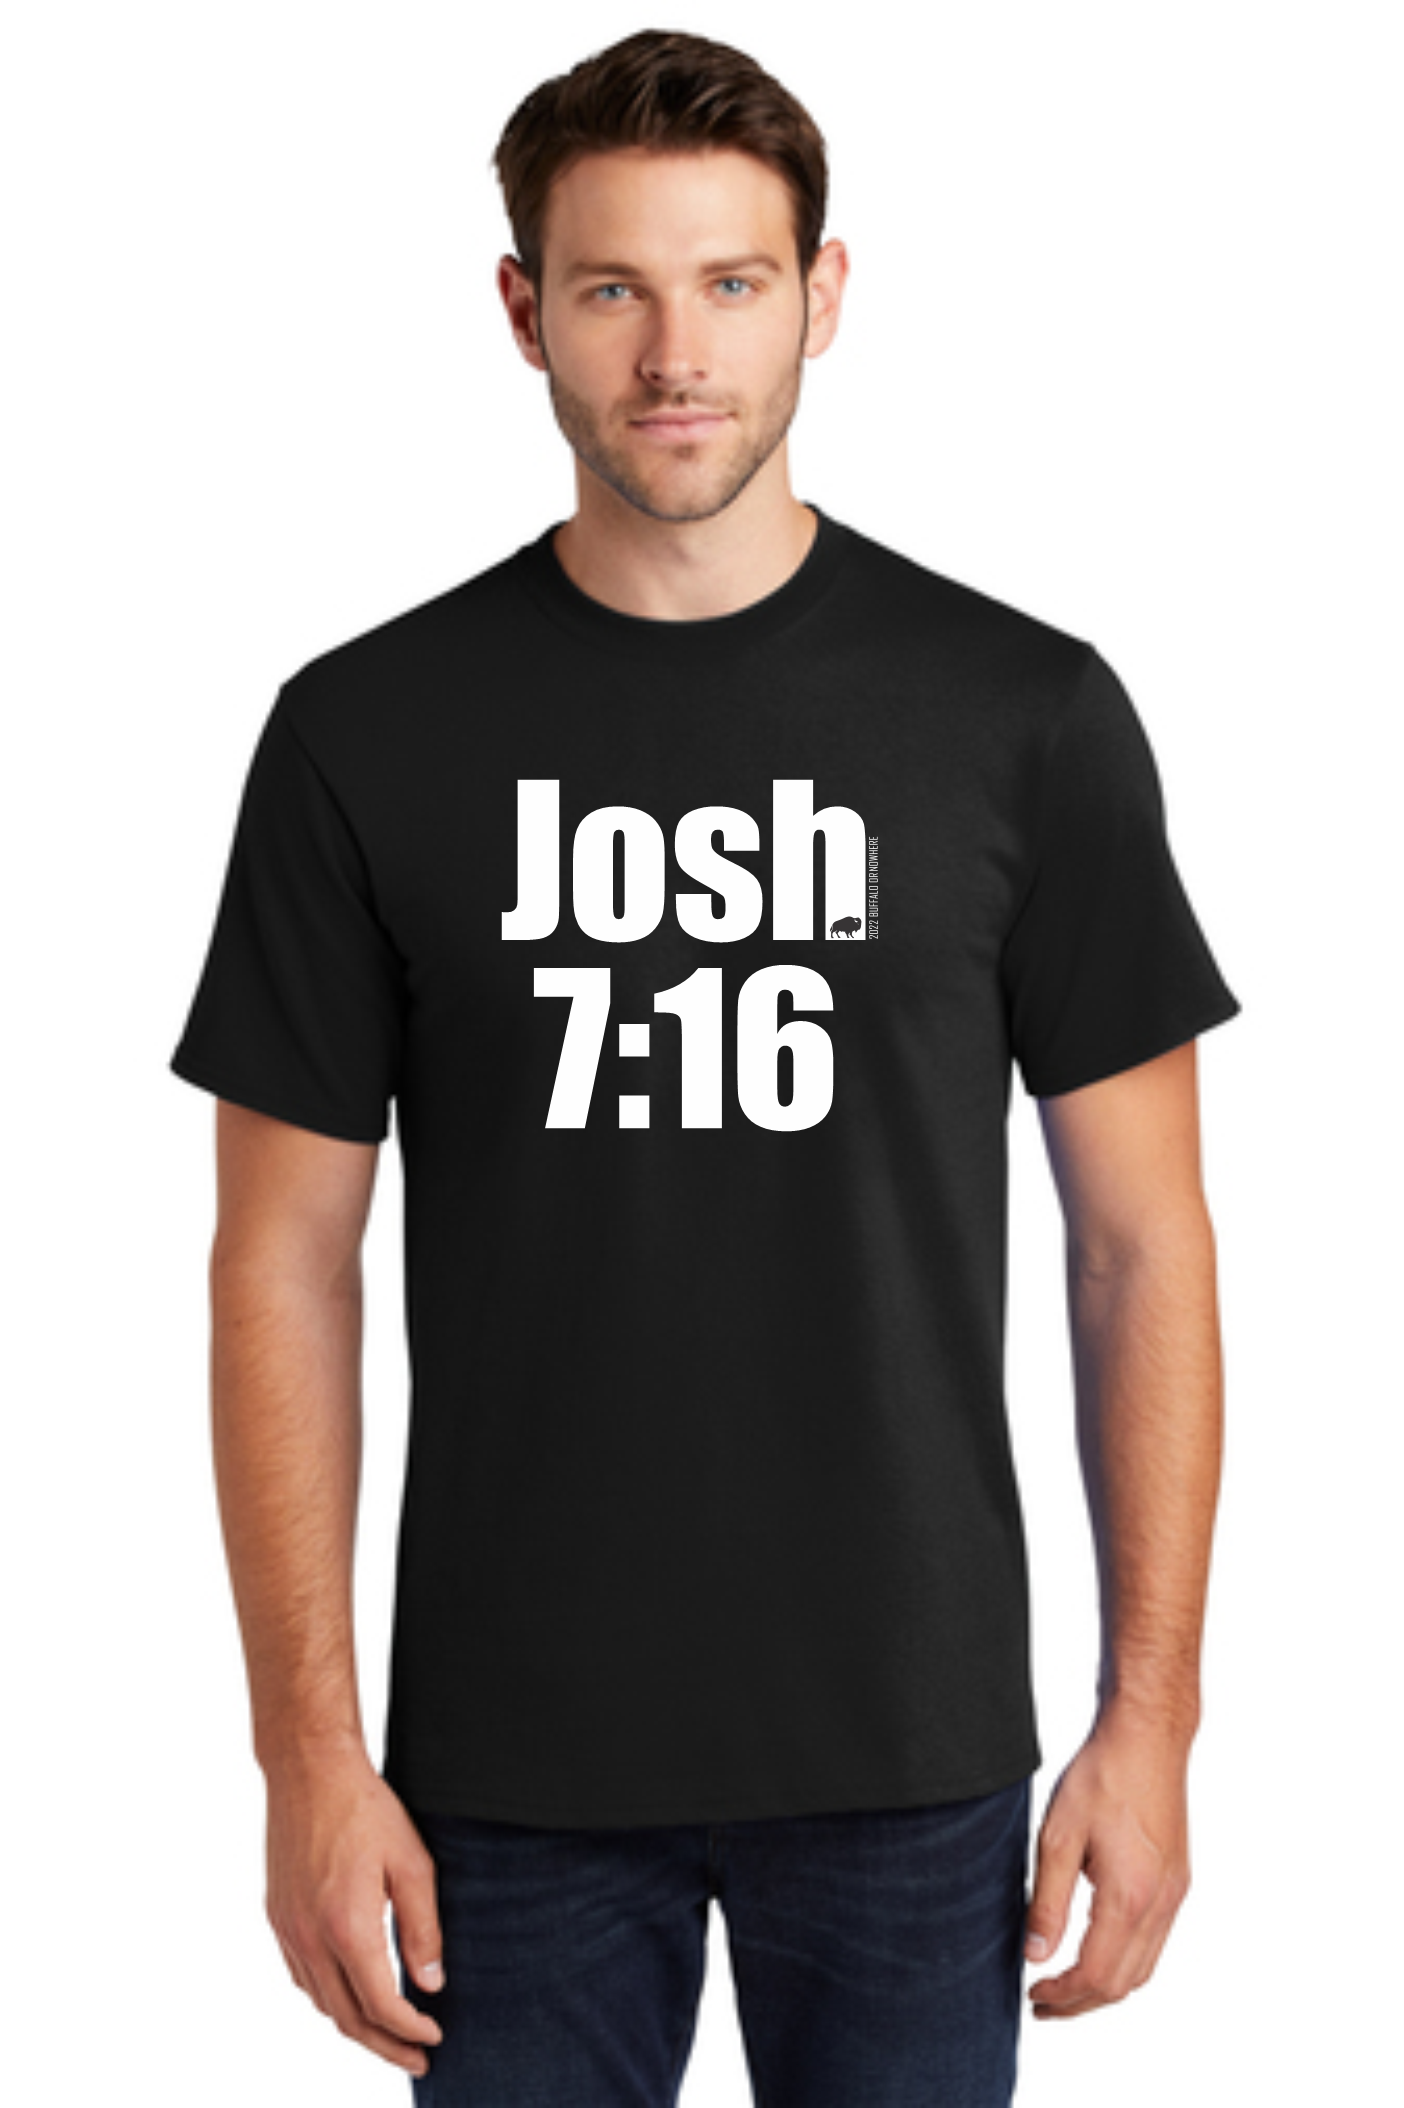 Josh 7:16